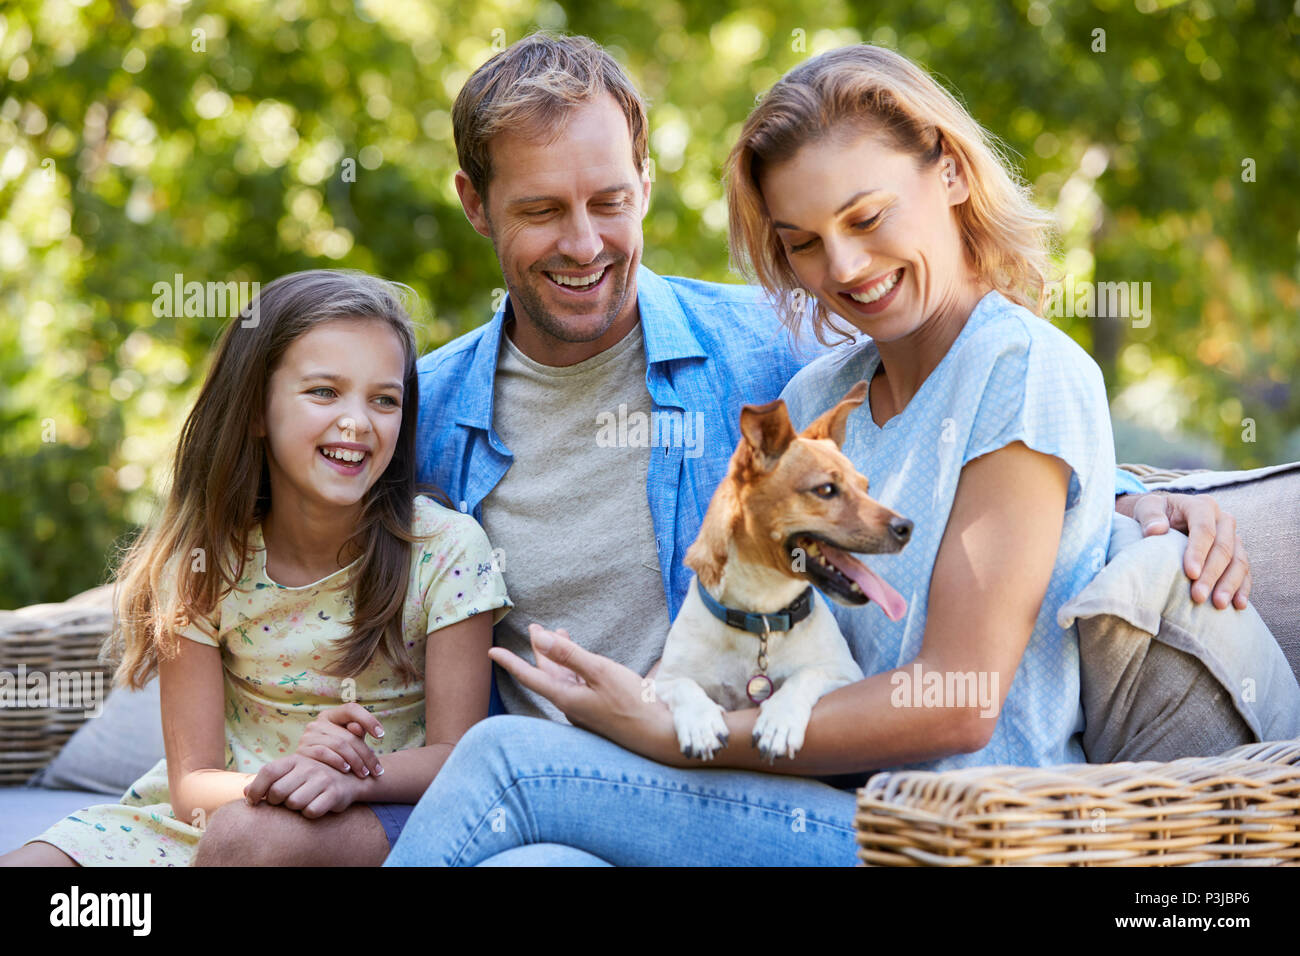 Les parents et la fille assise avec son chien dans le jardin Banque D'Images